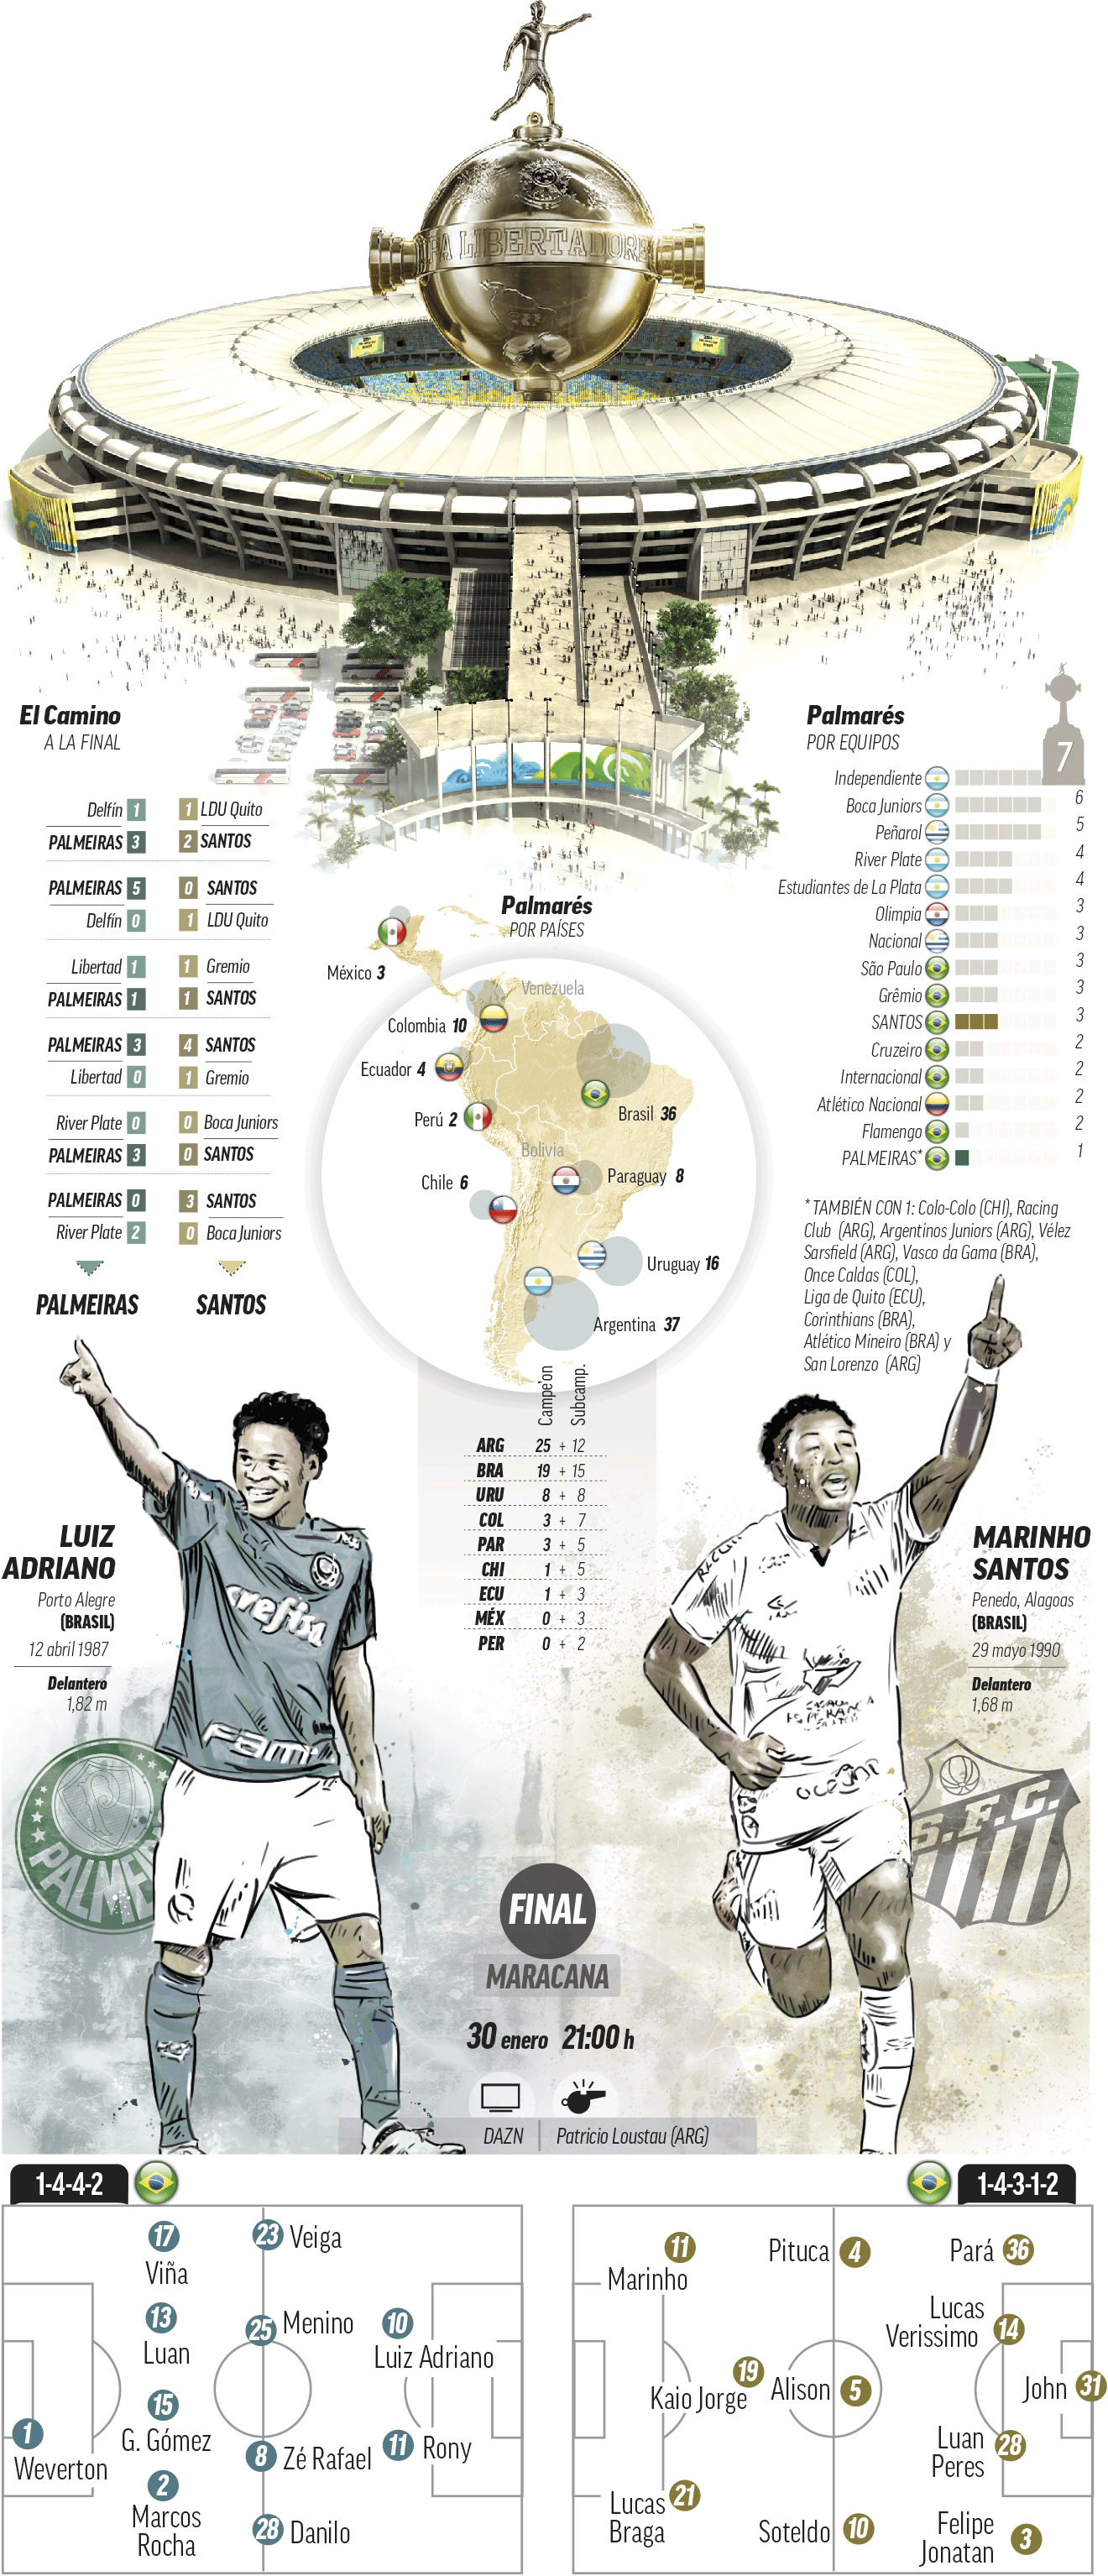 Palmeiras-Santos, una final que alcanzará grandes niveles futbolísticos